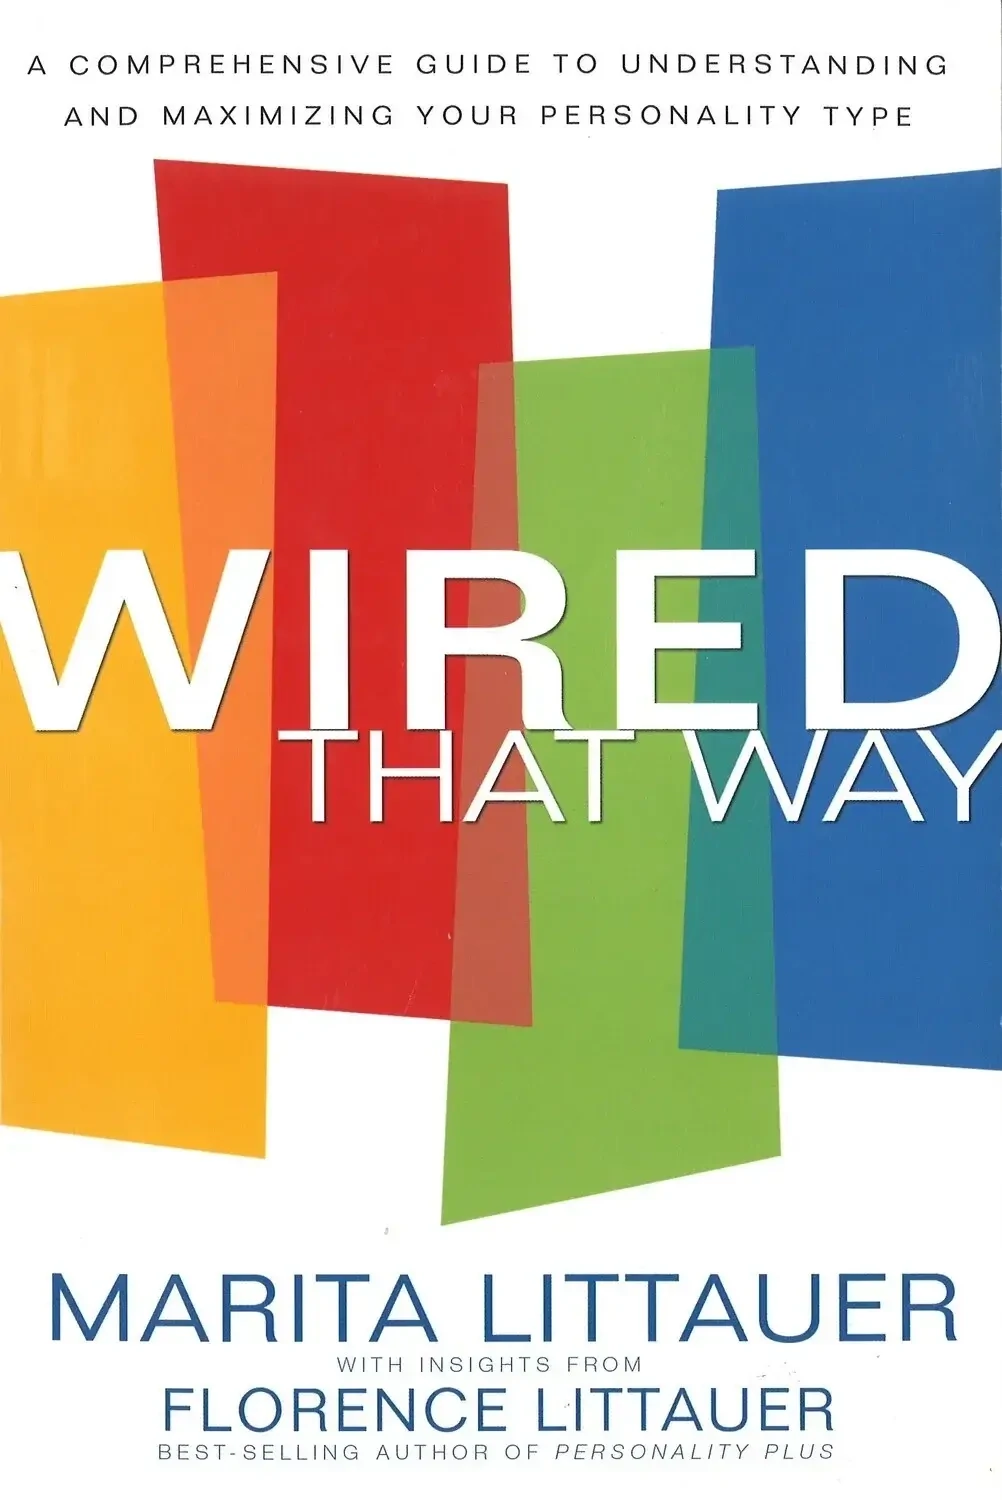 Wired That Way by Marita Littauer